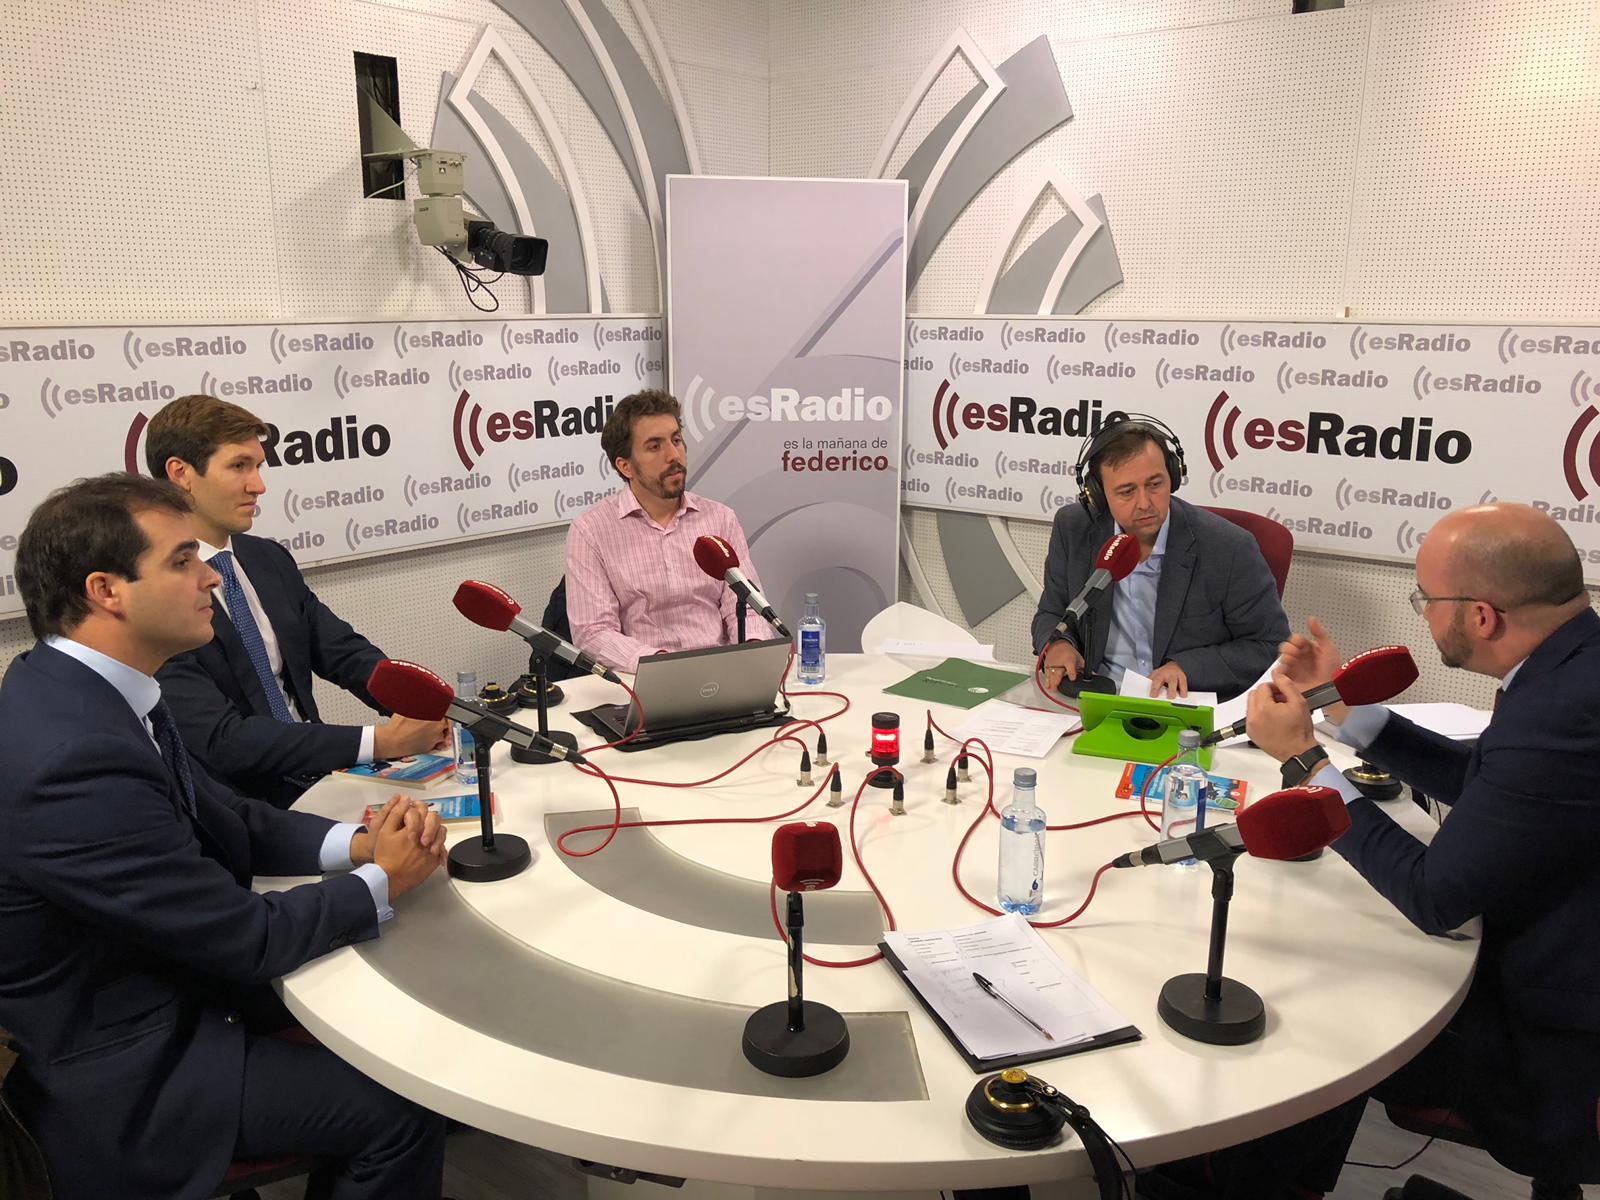 Mundo Emprende: ¿Qué medidas para el emprendimiento prometen los partidos en Andalucía?